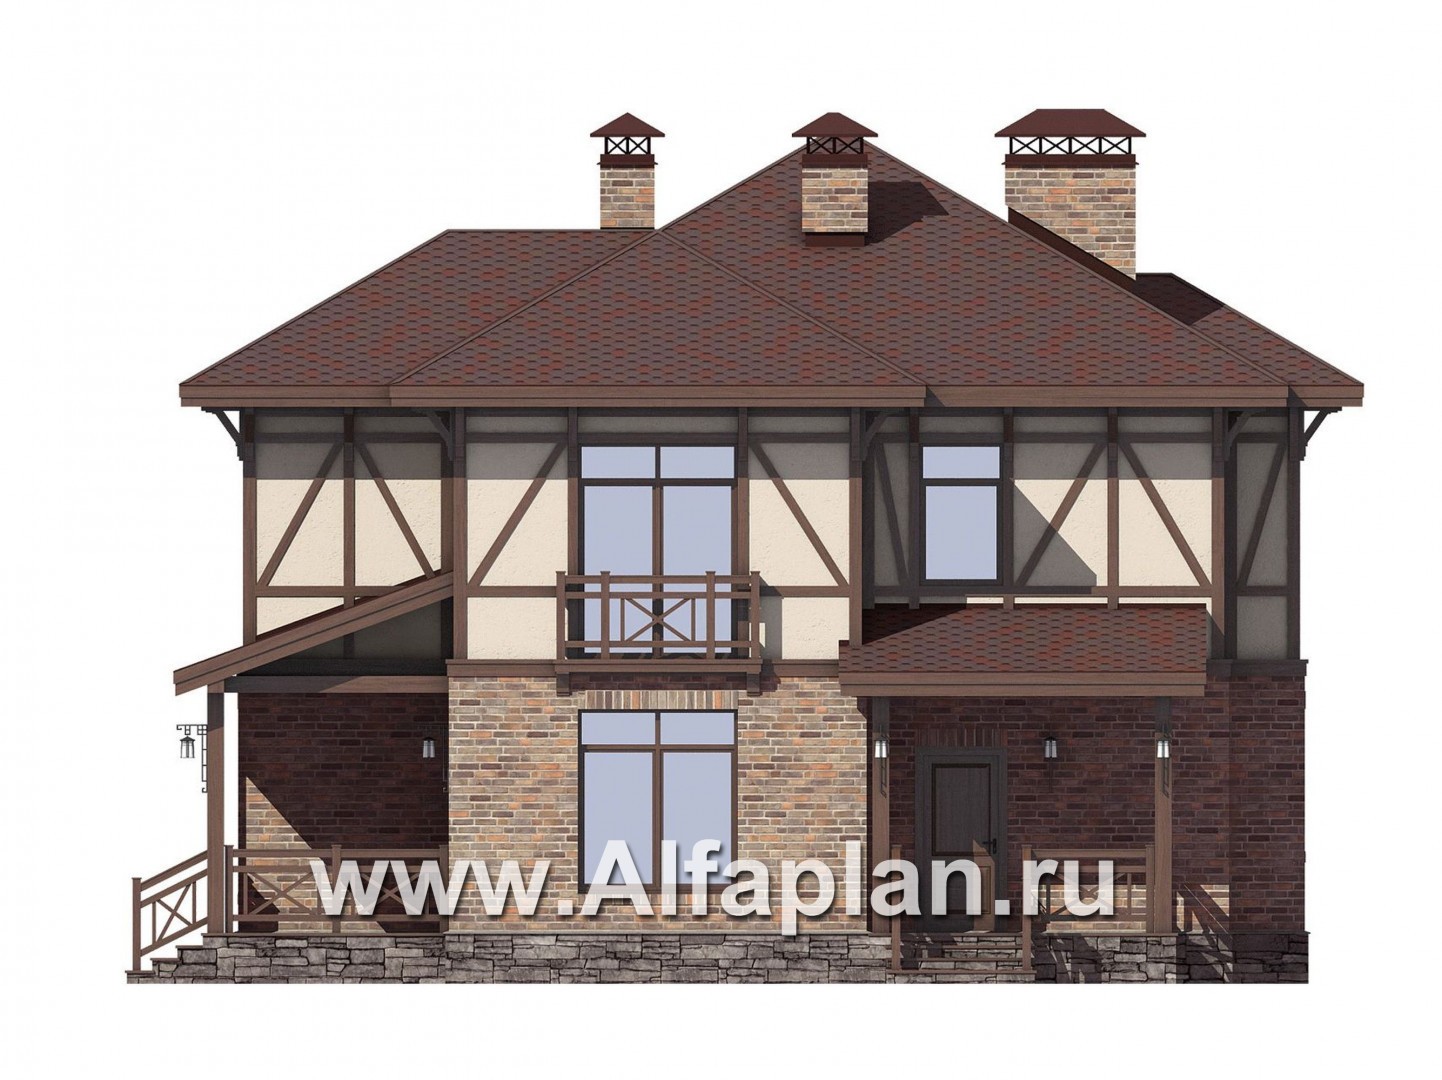 Проект двухэтажного дома, из кирпича, планировка с террасой, в стиле фахверк - фасад дома